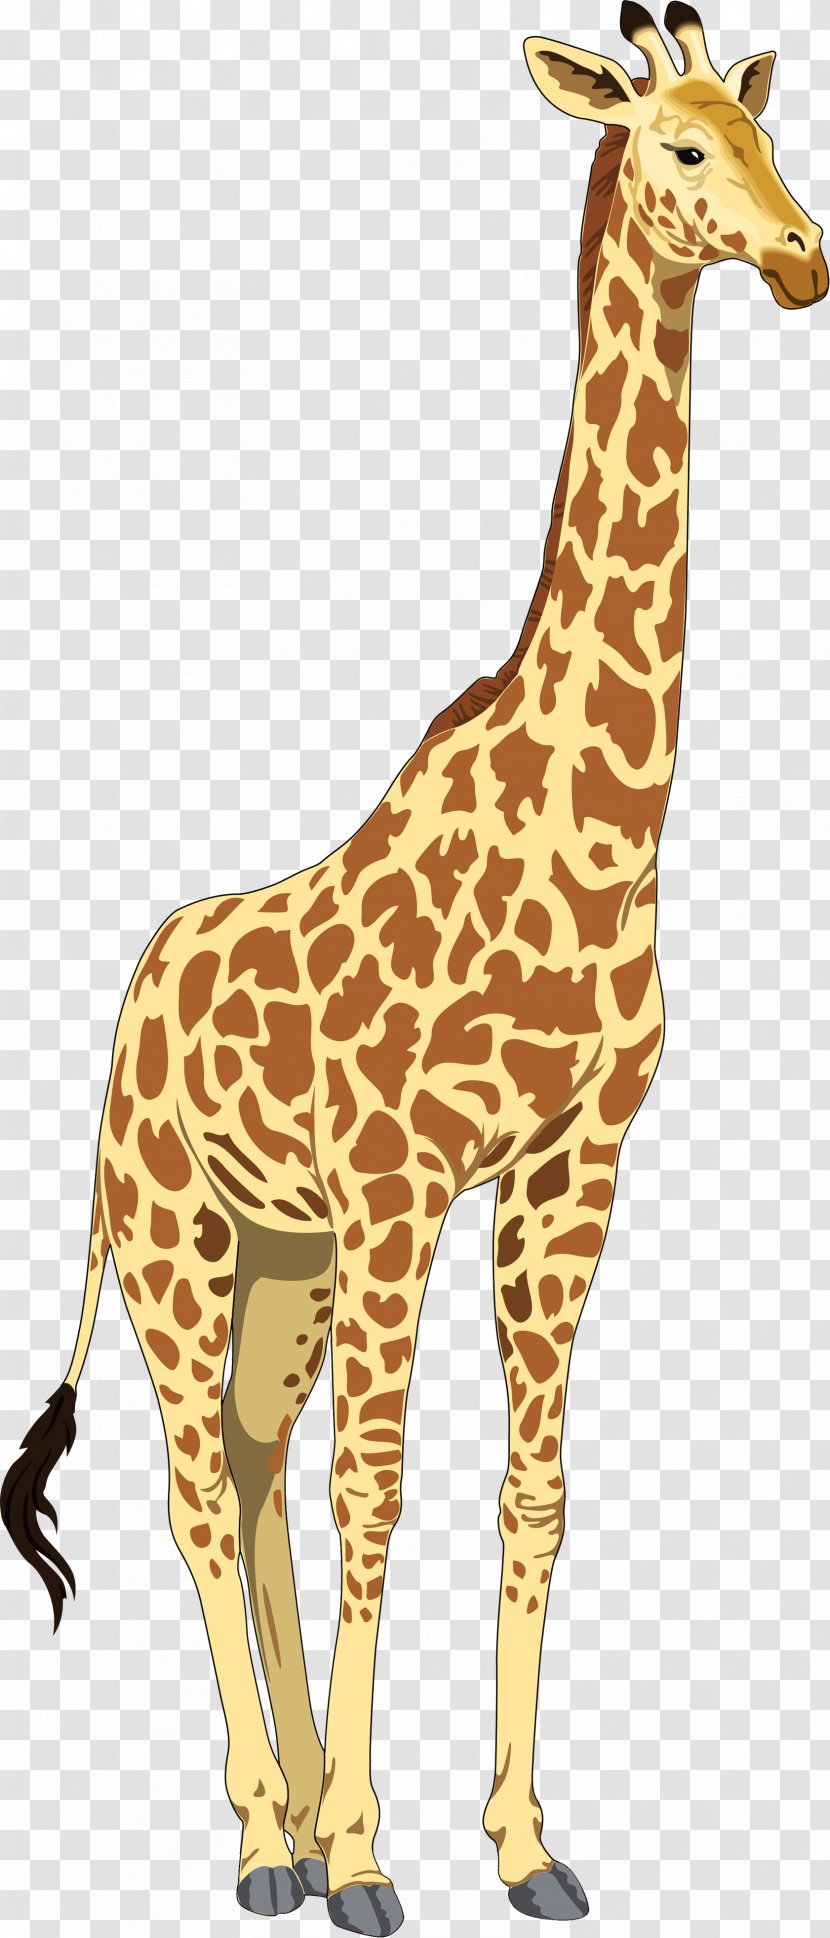 Baby Giraffes Clip Art - Mammal - Giraffe Cartoon Transparent PNG